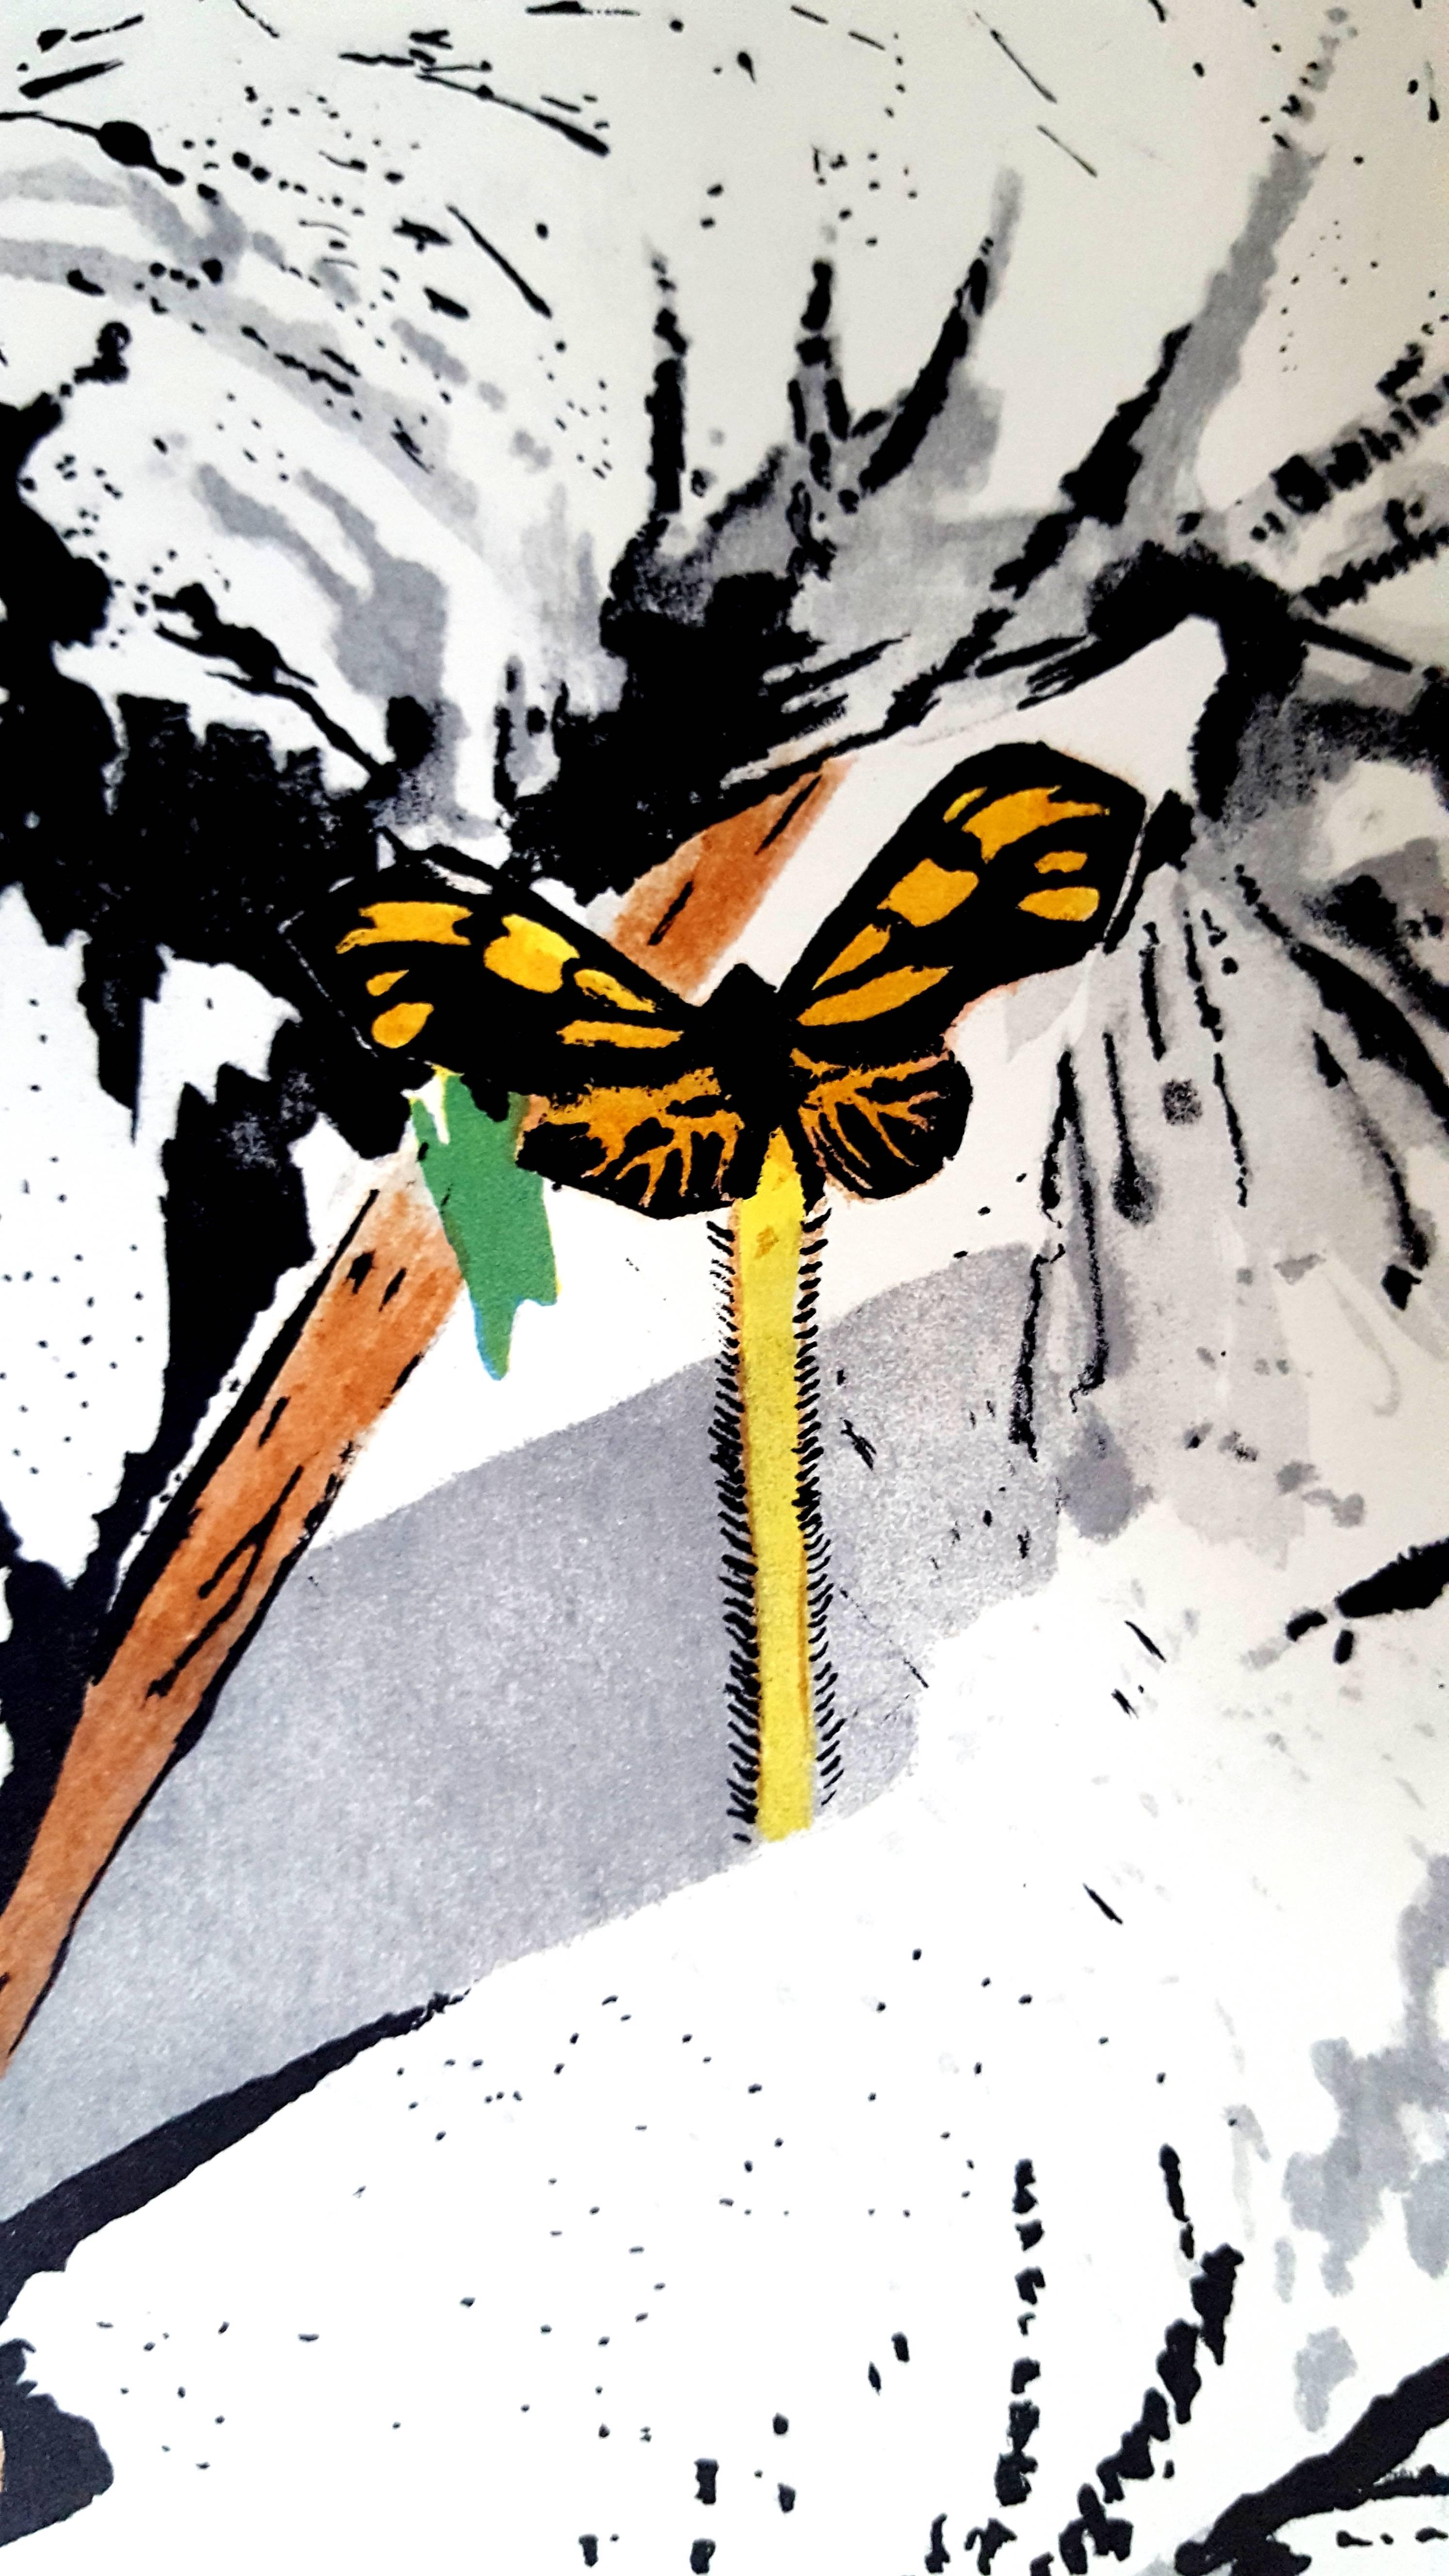 Salvador Dali - Don Quijote überwältigt - Original Lithographie
Joseph FORET, Paris, 1957
DRUCKER : Manequin
UNTERSCHRIFT : von Dali signierte Platte. 
LIMITIERT : Gesamtauflage von 233 Stück
Größe: 41 x 33 cm
REFERENZEN : Feld 57-1 / Michler &